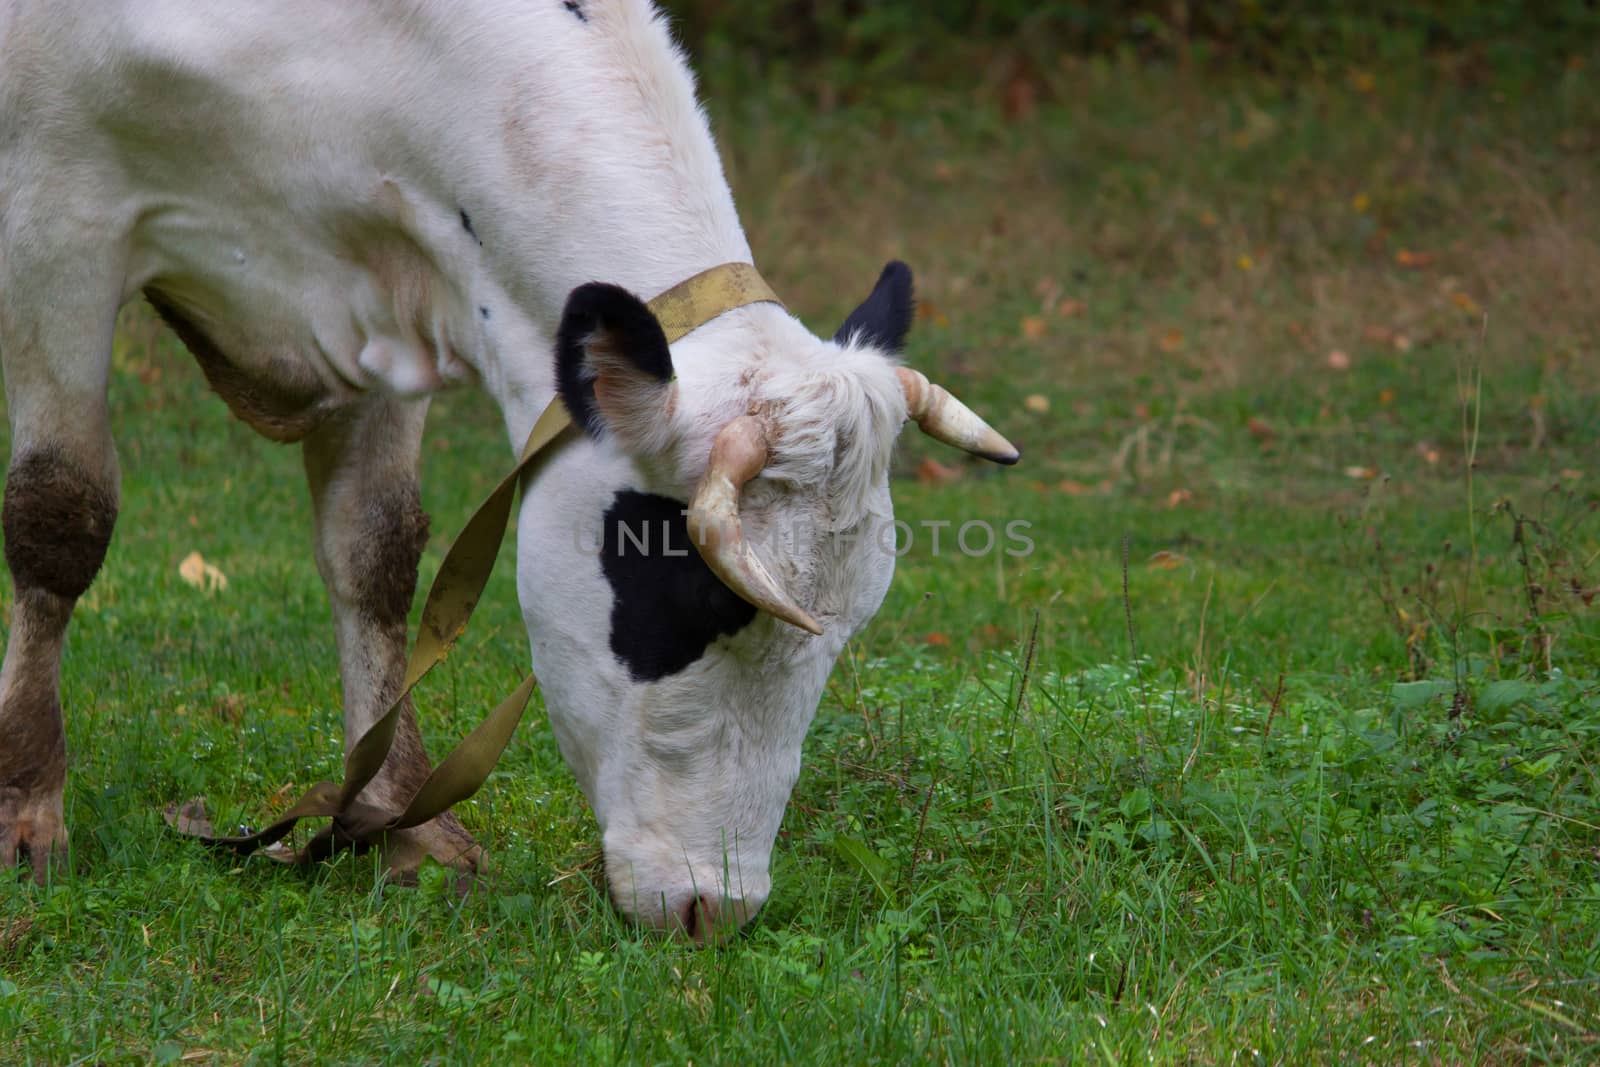 cow on a green field by liwei12